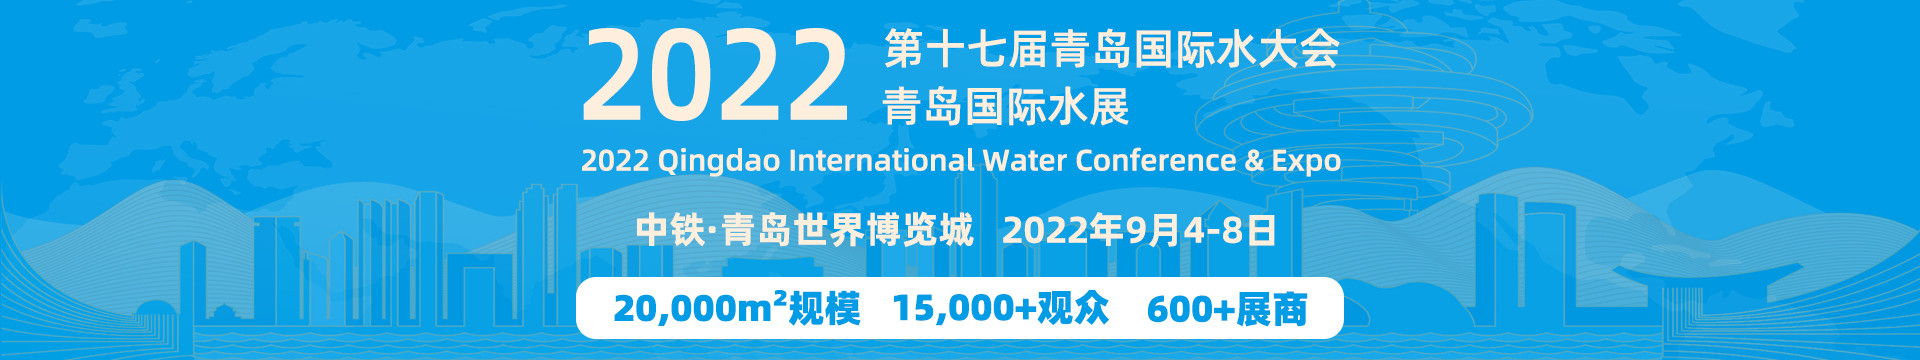 2022（第十七届）青岛国际水大会暨青岛国际水展